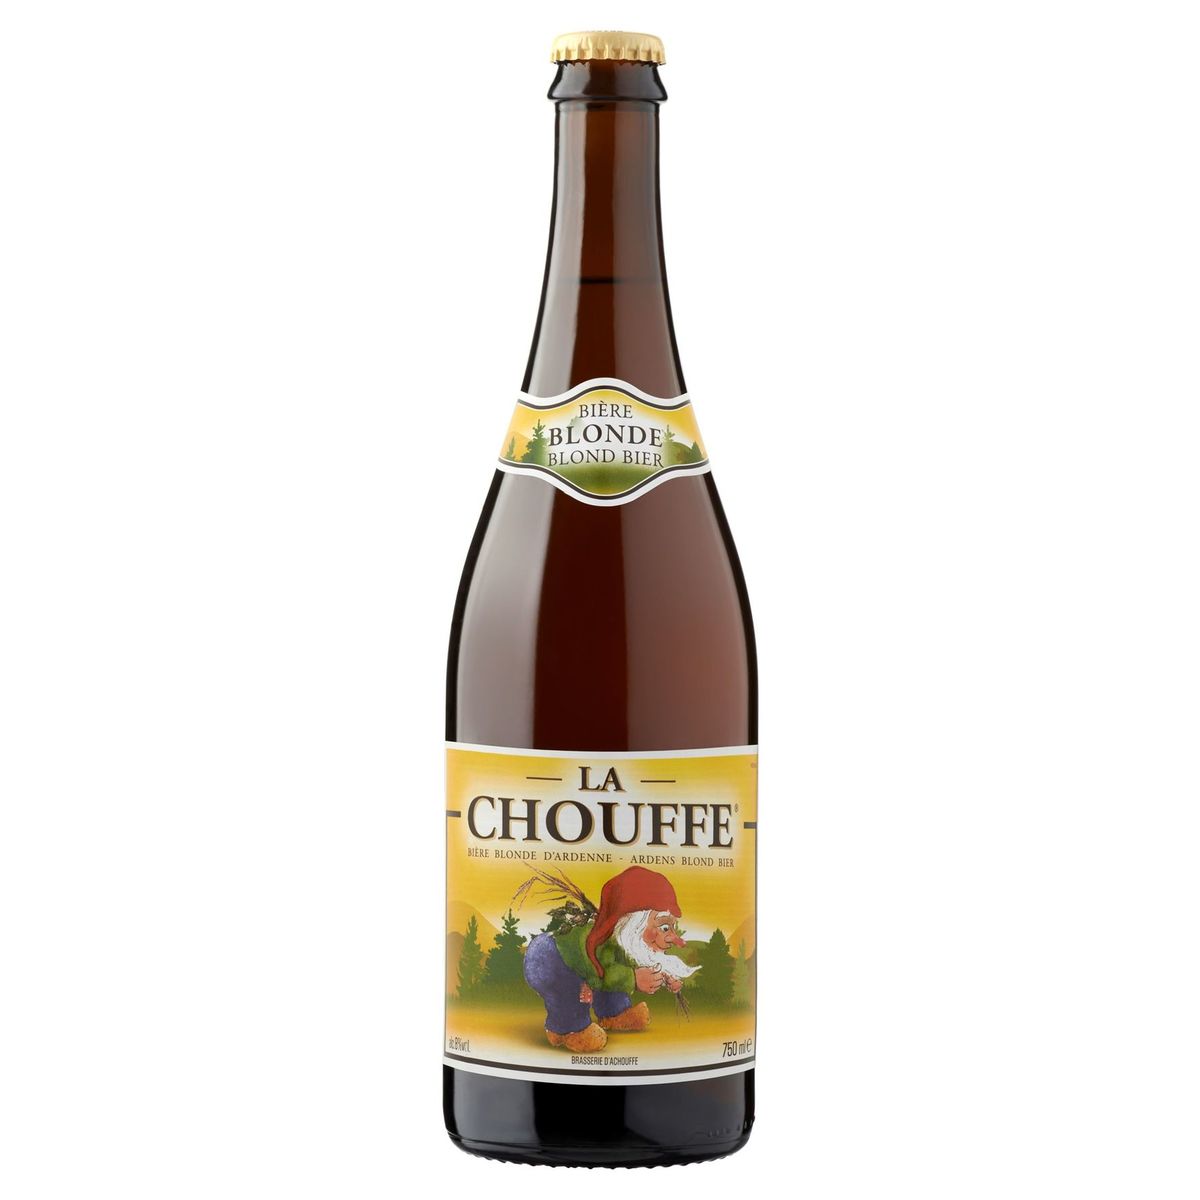 La Chouffe Ardens Blond Bier Fles 750 ml